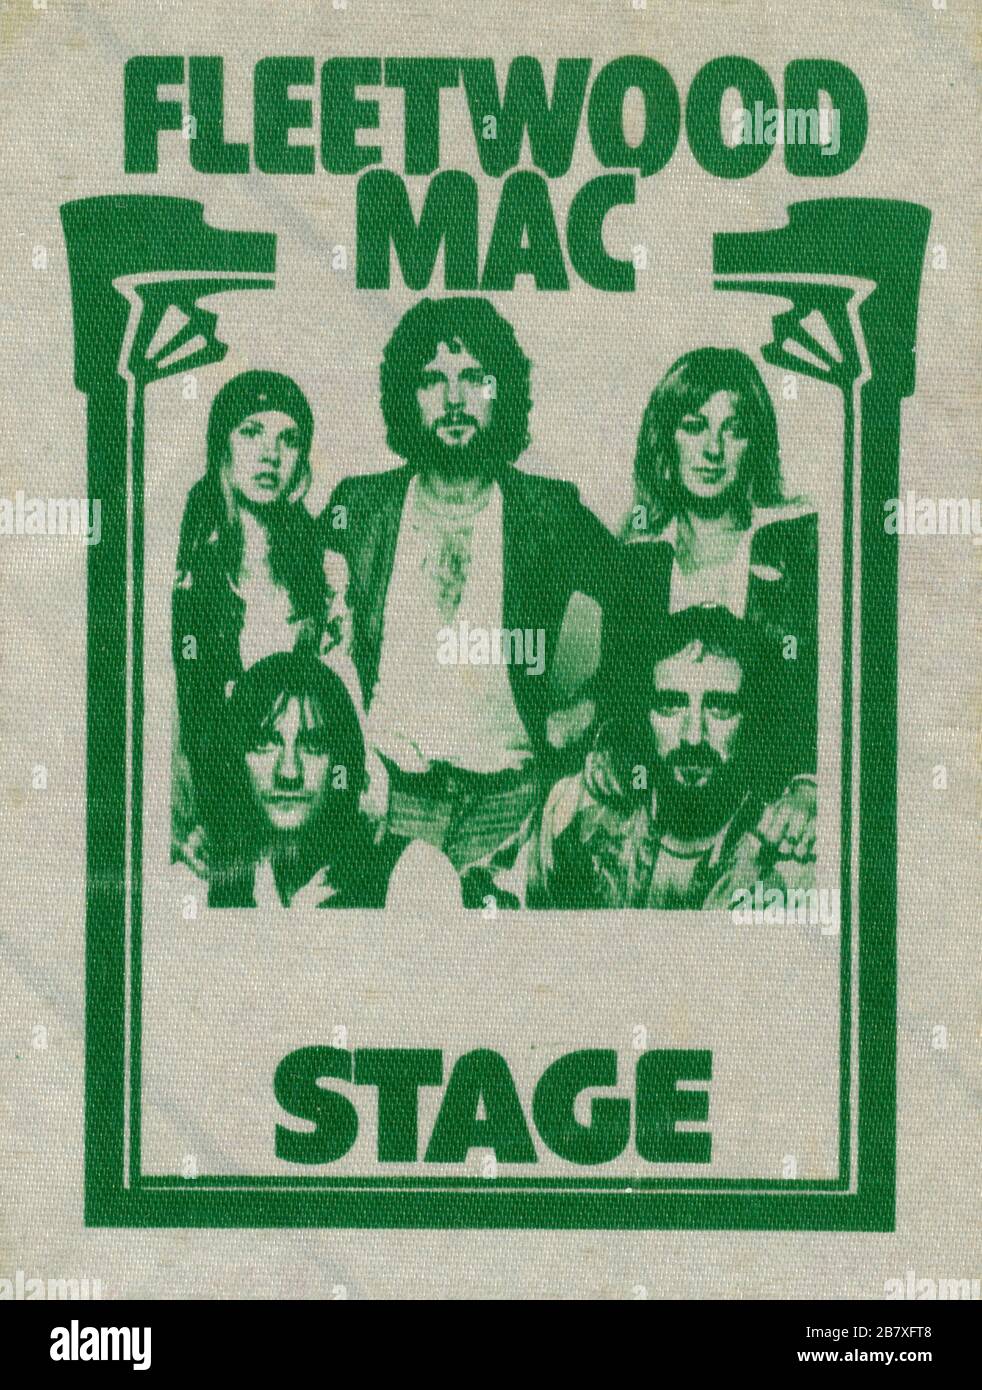 Fleetwood Mac's offizieller Backstage Pass von ihrem Konzert in der MEKKA Arena Show in Milwaukee, Wisconsin am 24. Juni 1976. Dieser Pass war eigentlich Fleetwoods eigener Touring-Pass. Das war in jenem Jahr nicht ungewöhnlich, aber schon in den 1970er Jahren druckten die meisten Bands keine eigenen Pässe. Um meine anderen mit Musik in Zusammenhang stehenden Vintage-Bilder zu sehen, suchen Sie nach Prestor Vintage-Musik Stockfoto